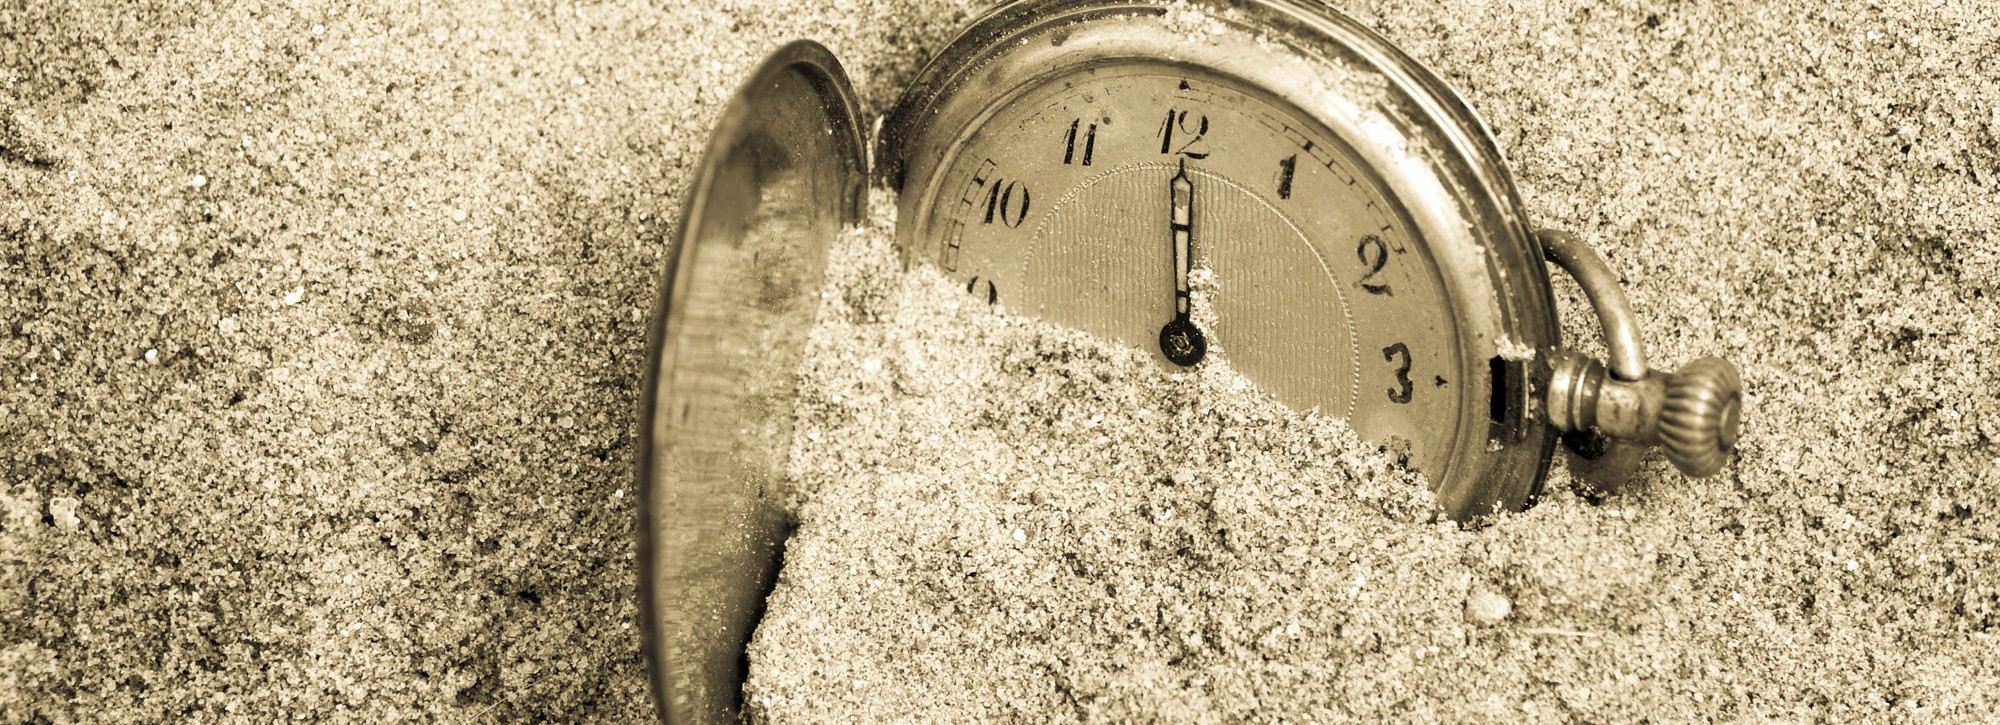 Силы и время но со. Время песок. Время утекает как песок. Часы в песке. Песок из часов утекает.